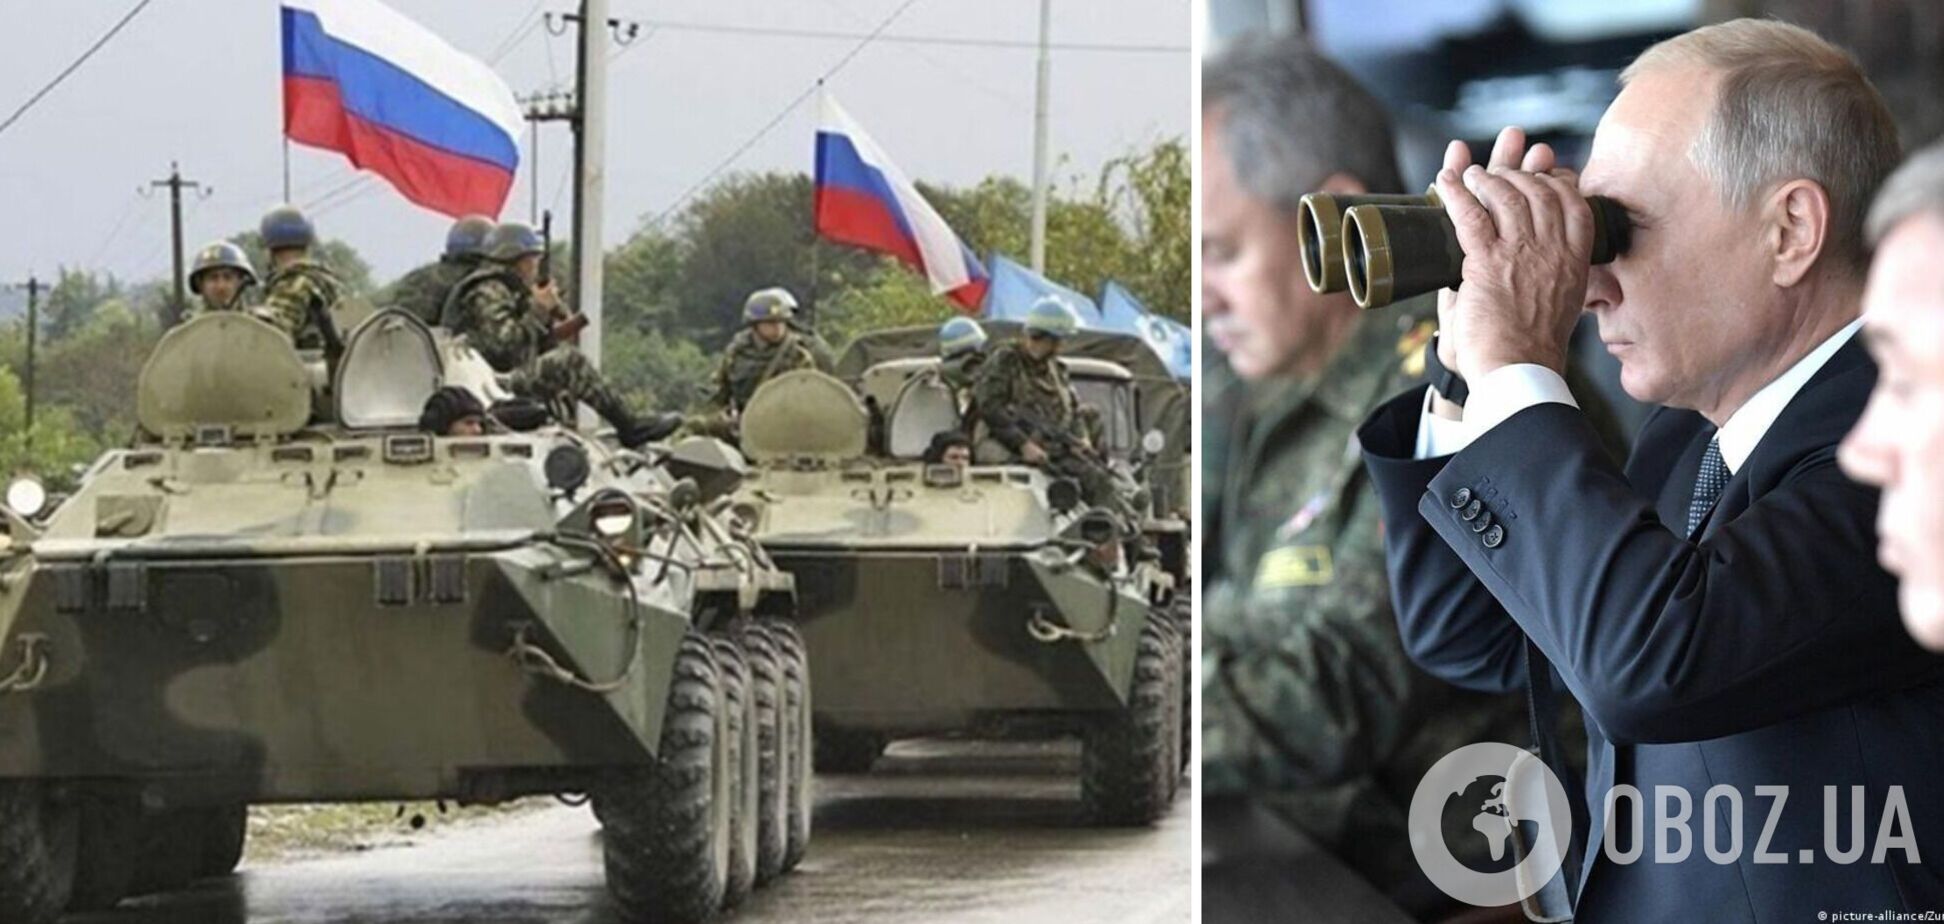 Мобілізація та наступ ворога: як працює пропаганда та які є перспективи в України